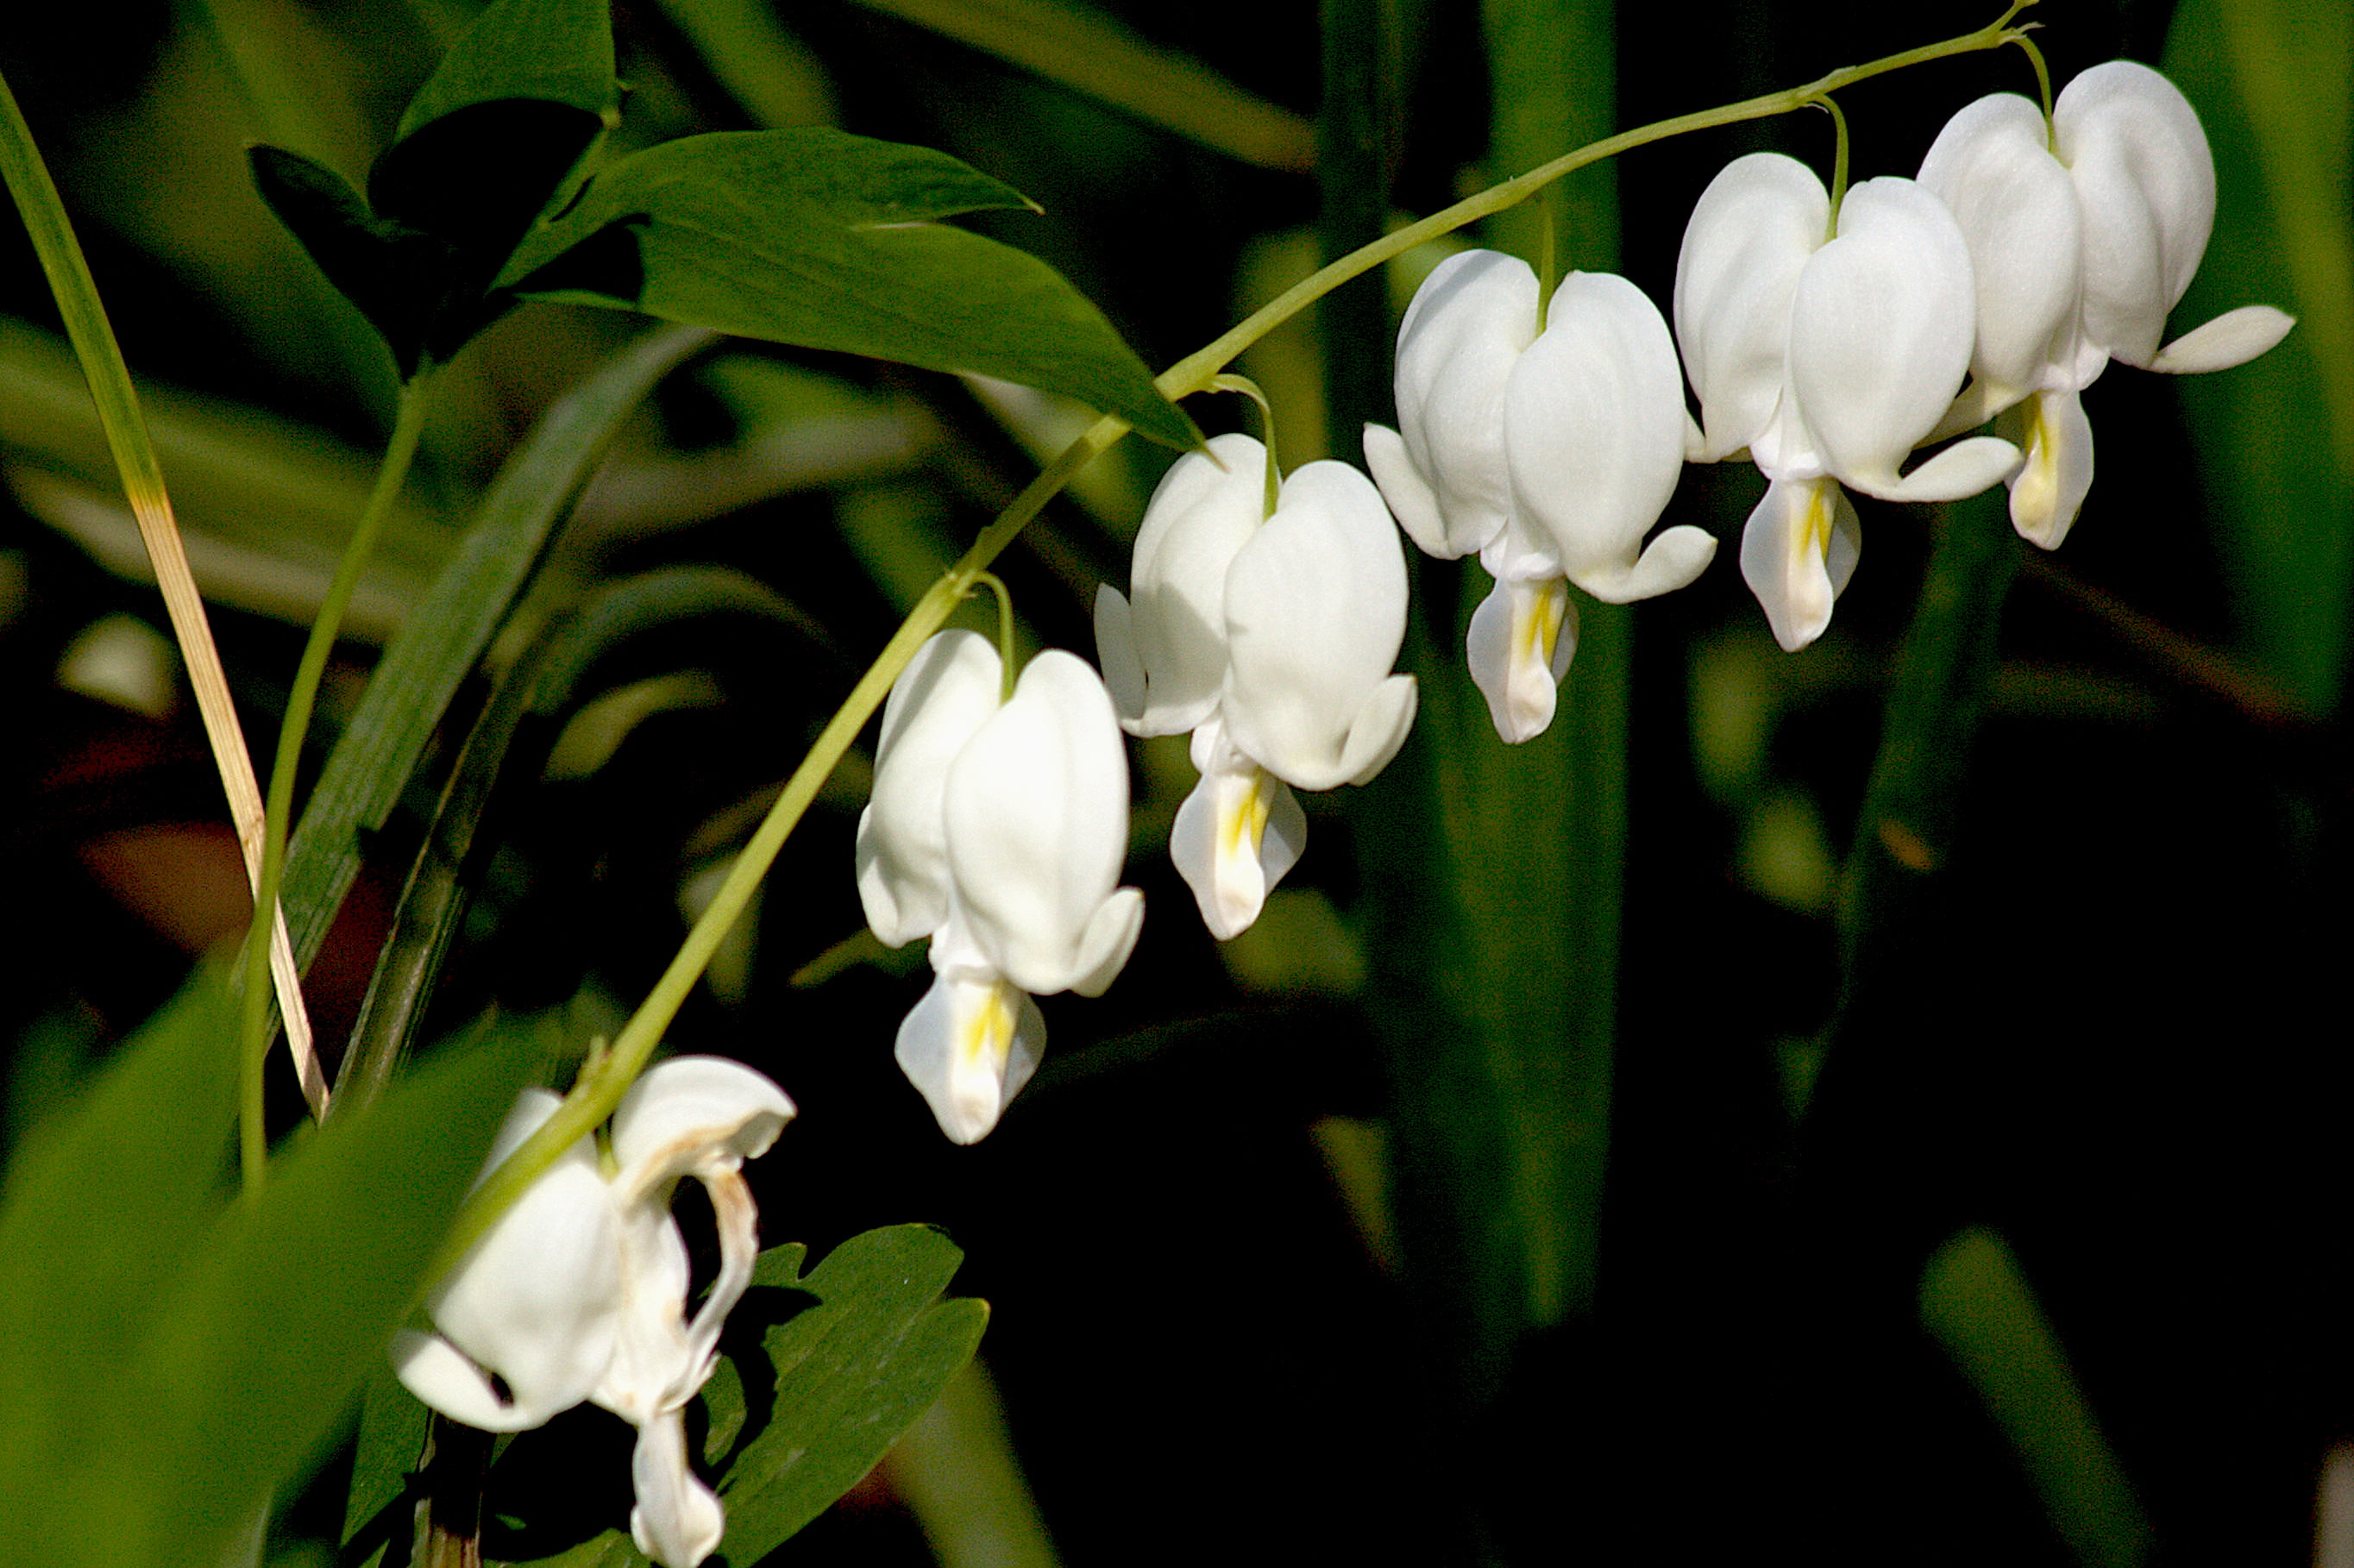 white bleeding heart flowers, lamprocapnos spectabilis